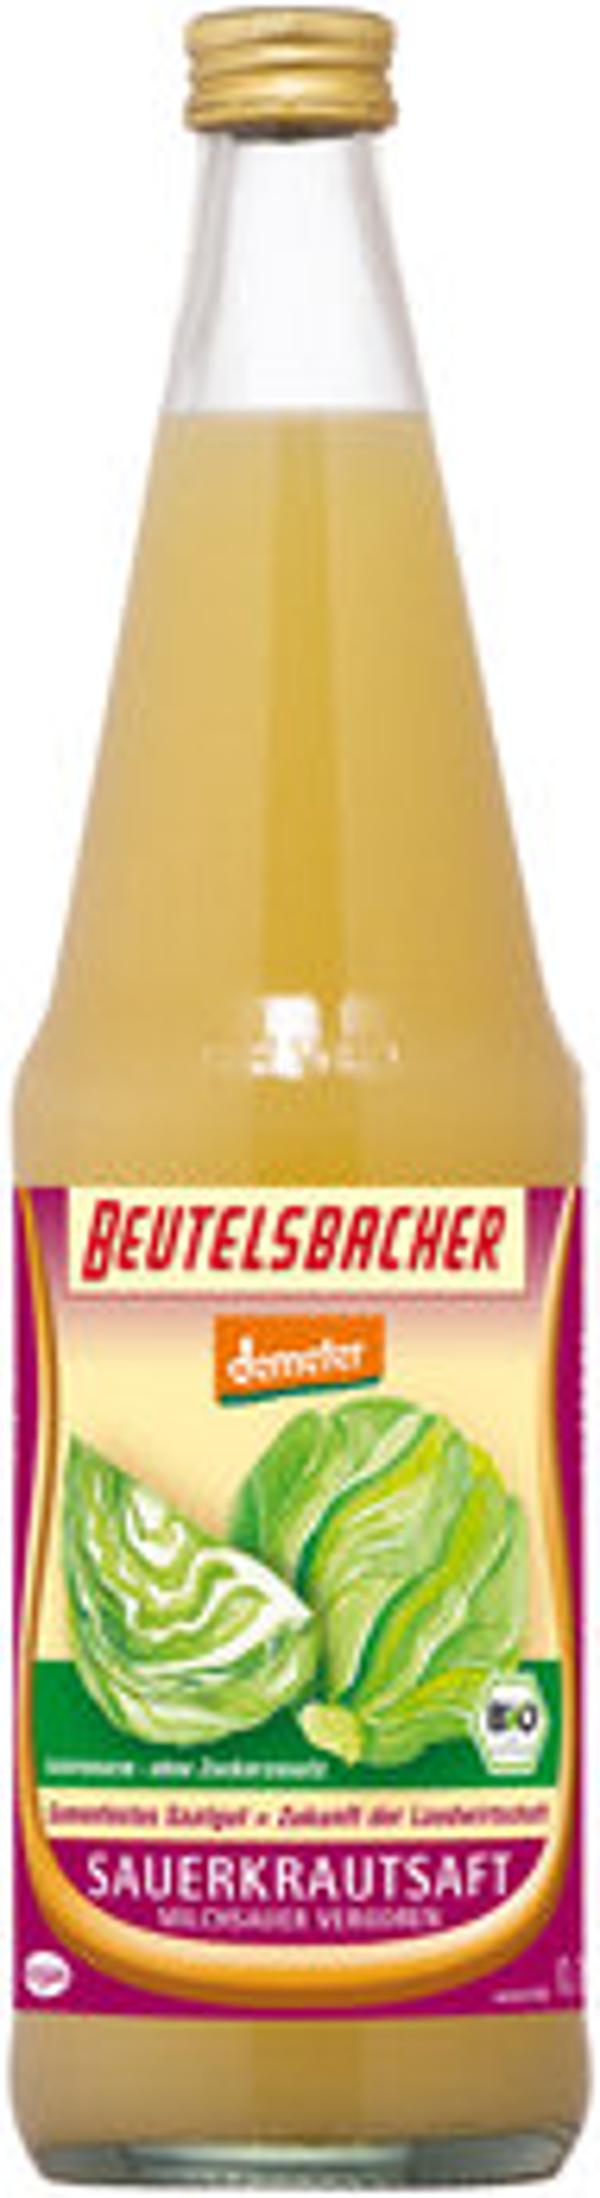 Produktfoto zu Sauerkrautsaft milchsauer, 6x0,7 l